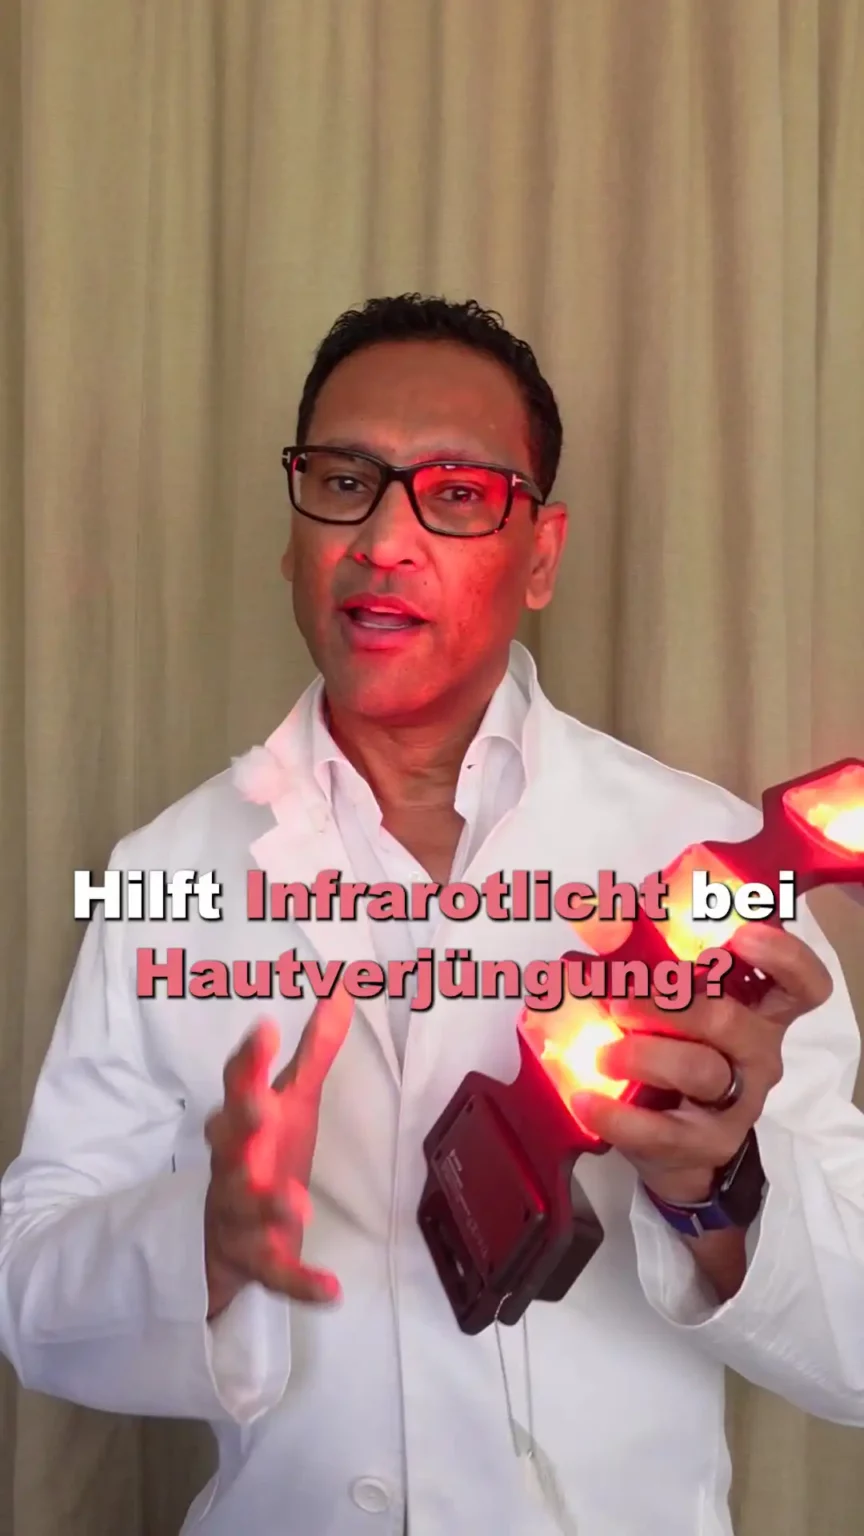 Aufnahme von Herr Elzebair mit einer Infrarotlichtmaske und dem Text "Hilft Infrarotlicht bei Hautverjüngung?".